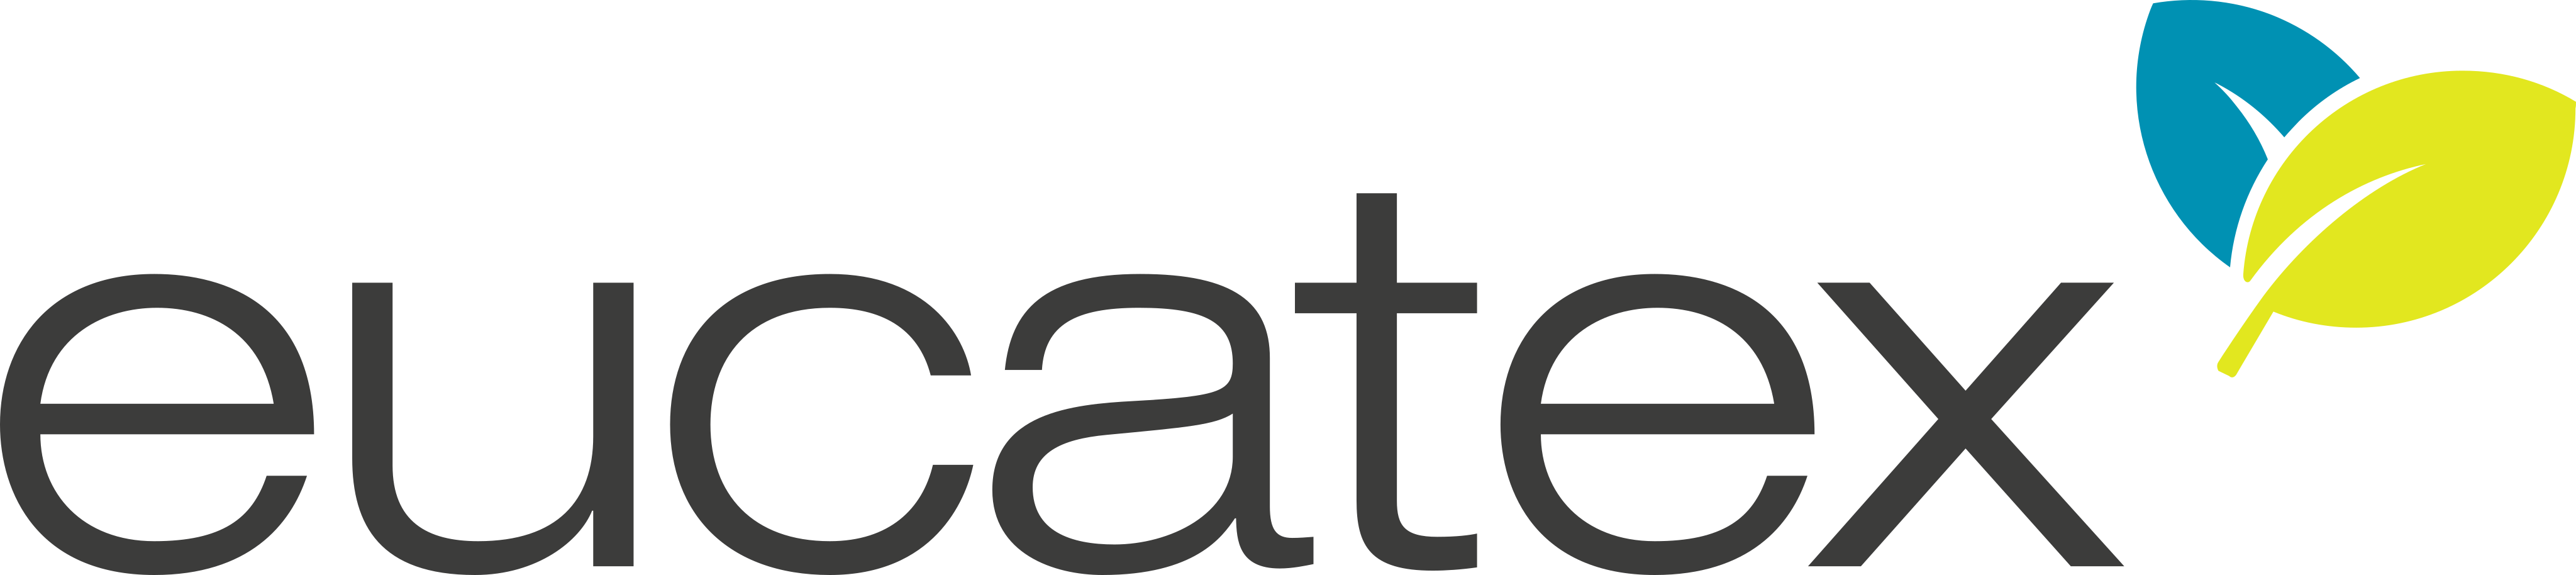 Eucatex Logo.